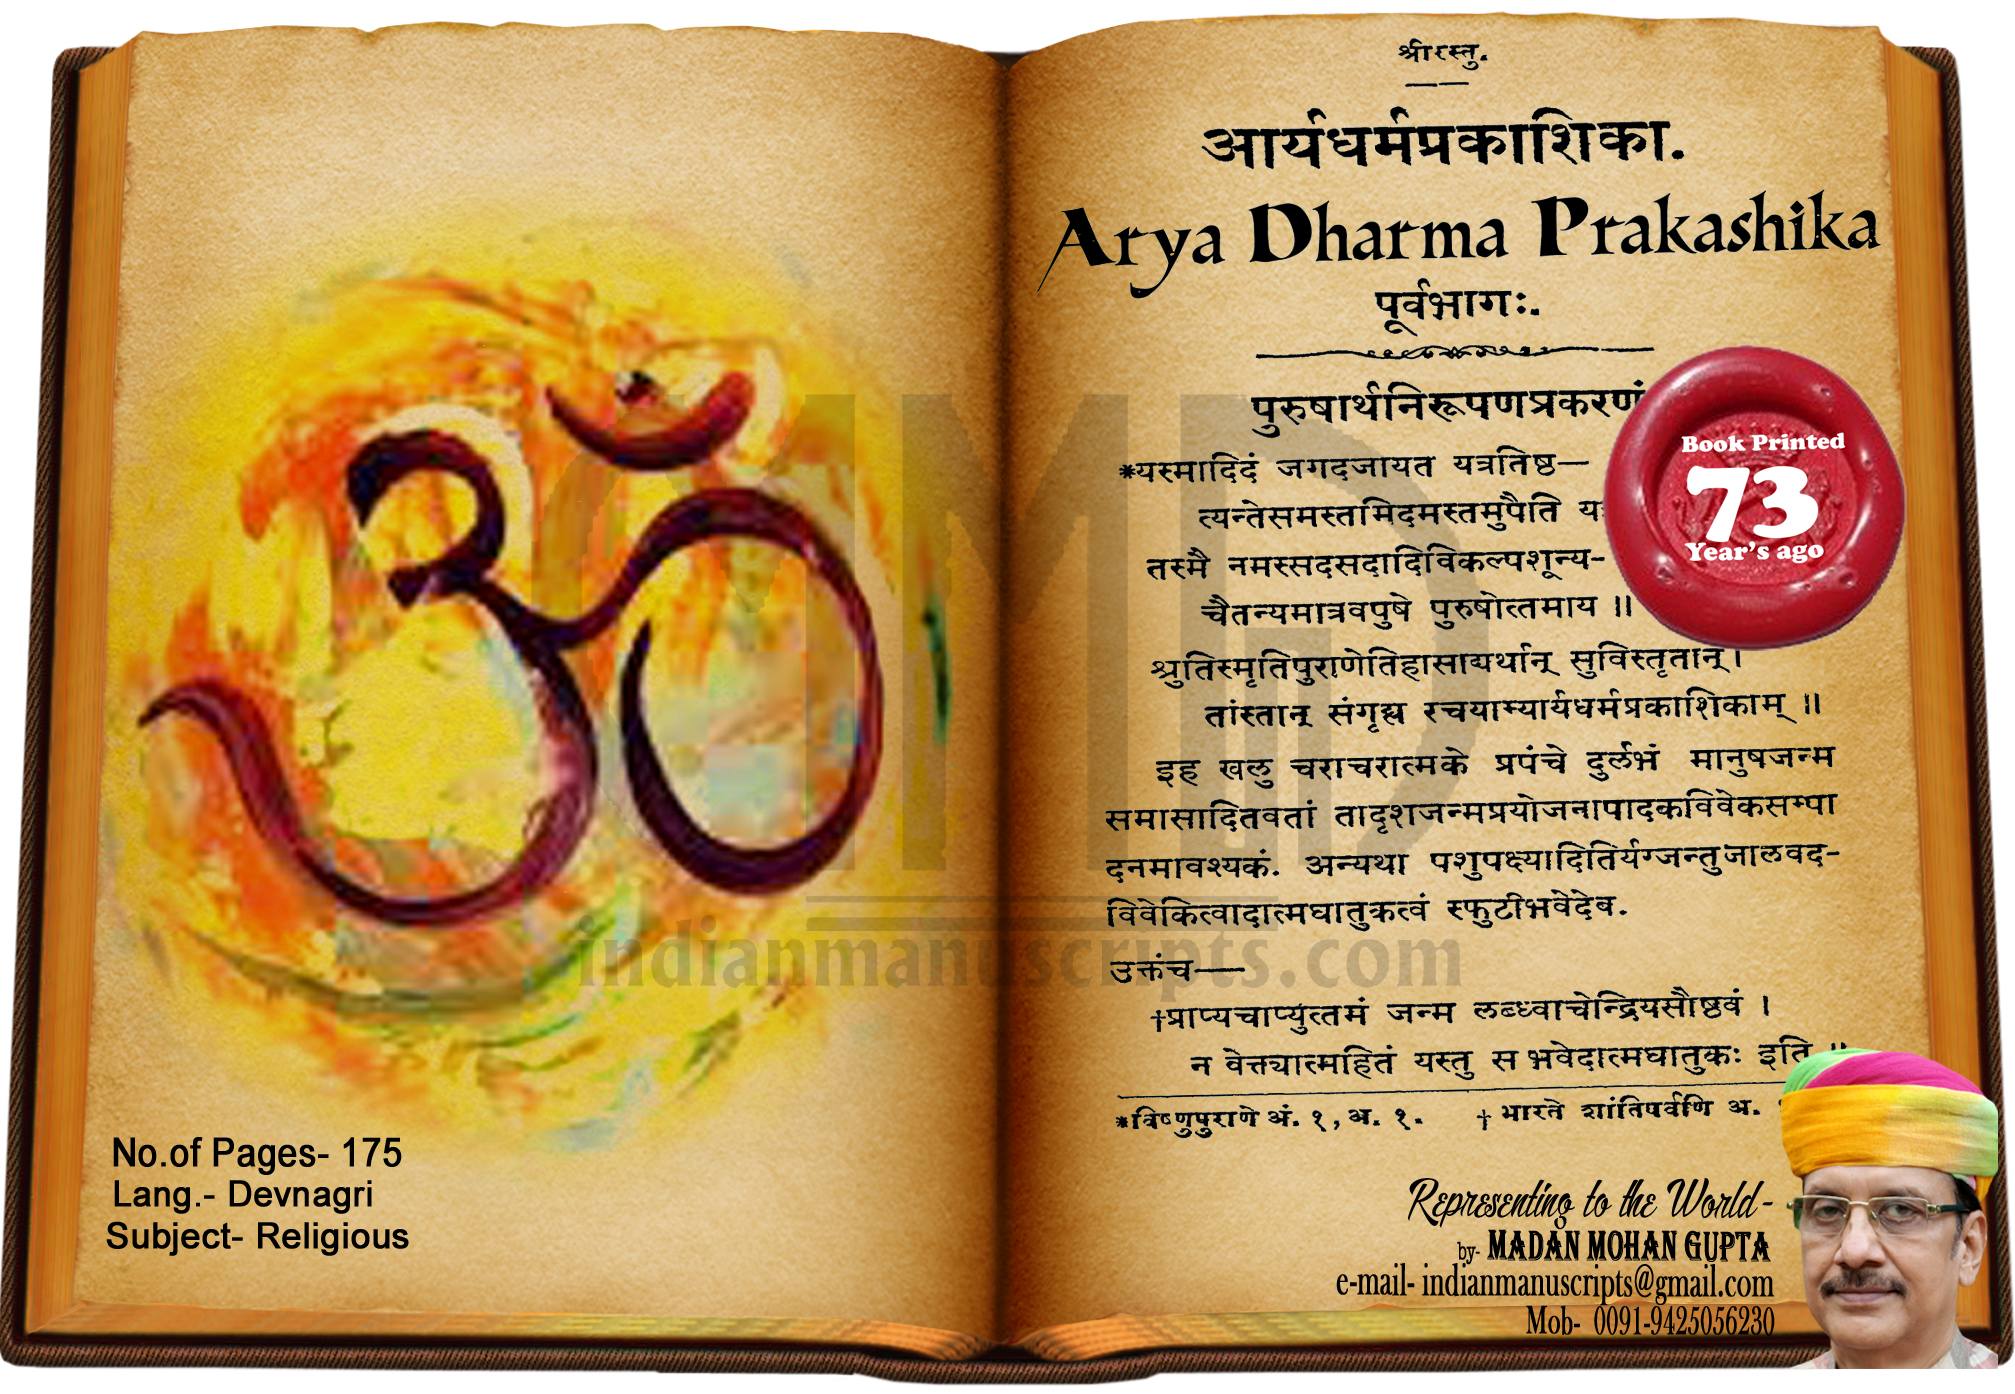 Arya Dharma Prakashika